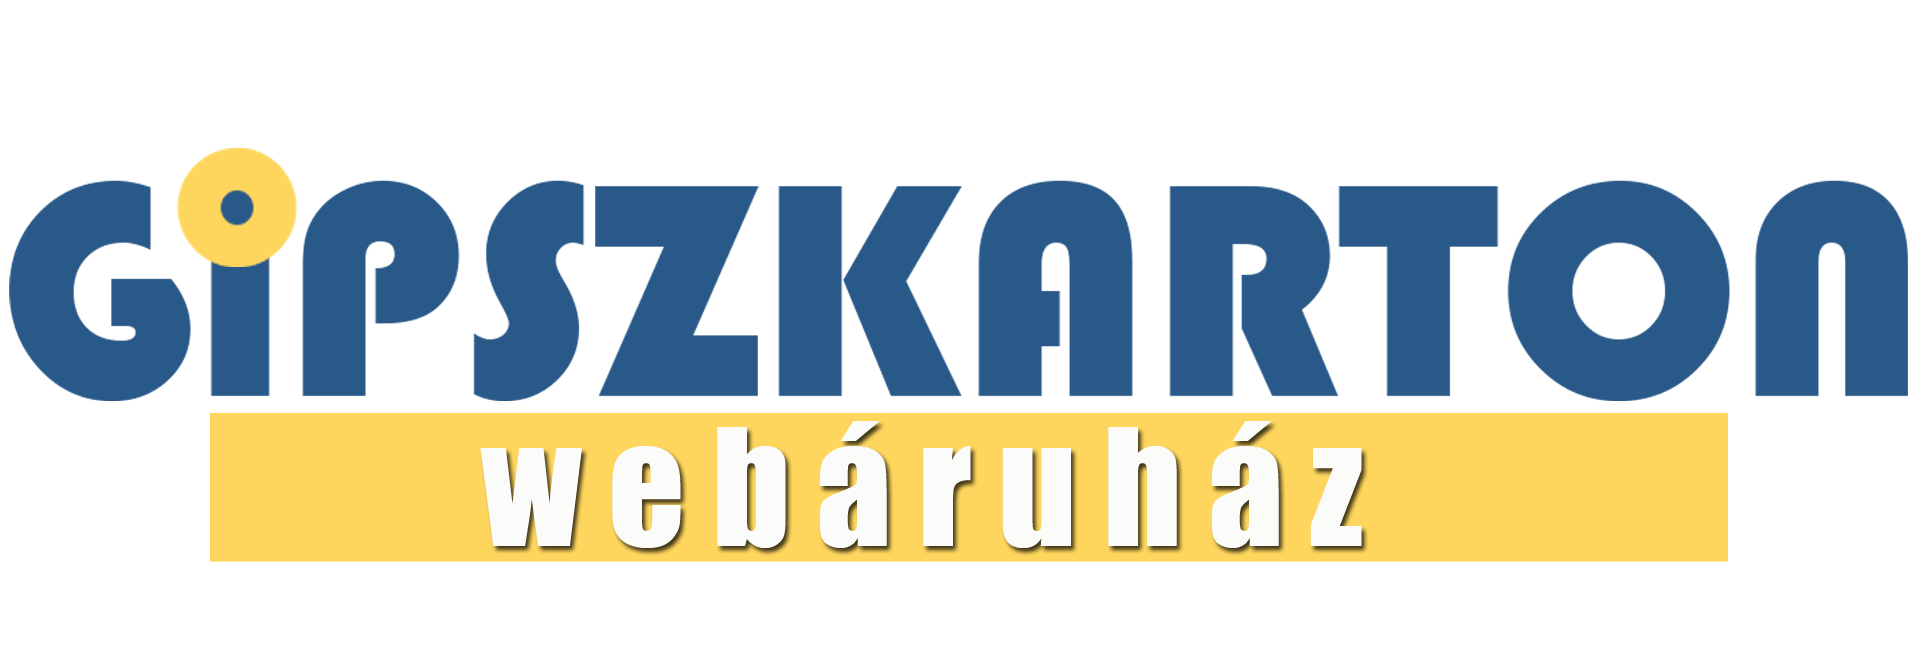 gipszkarton-webaruhaz-2021